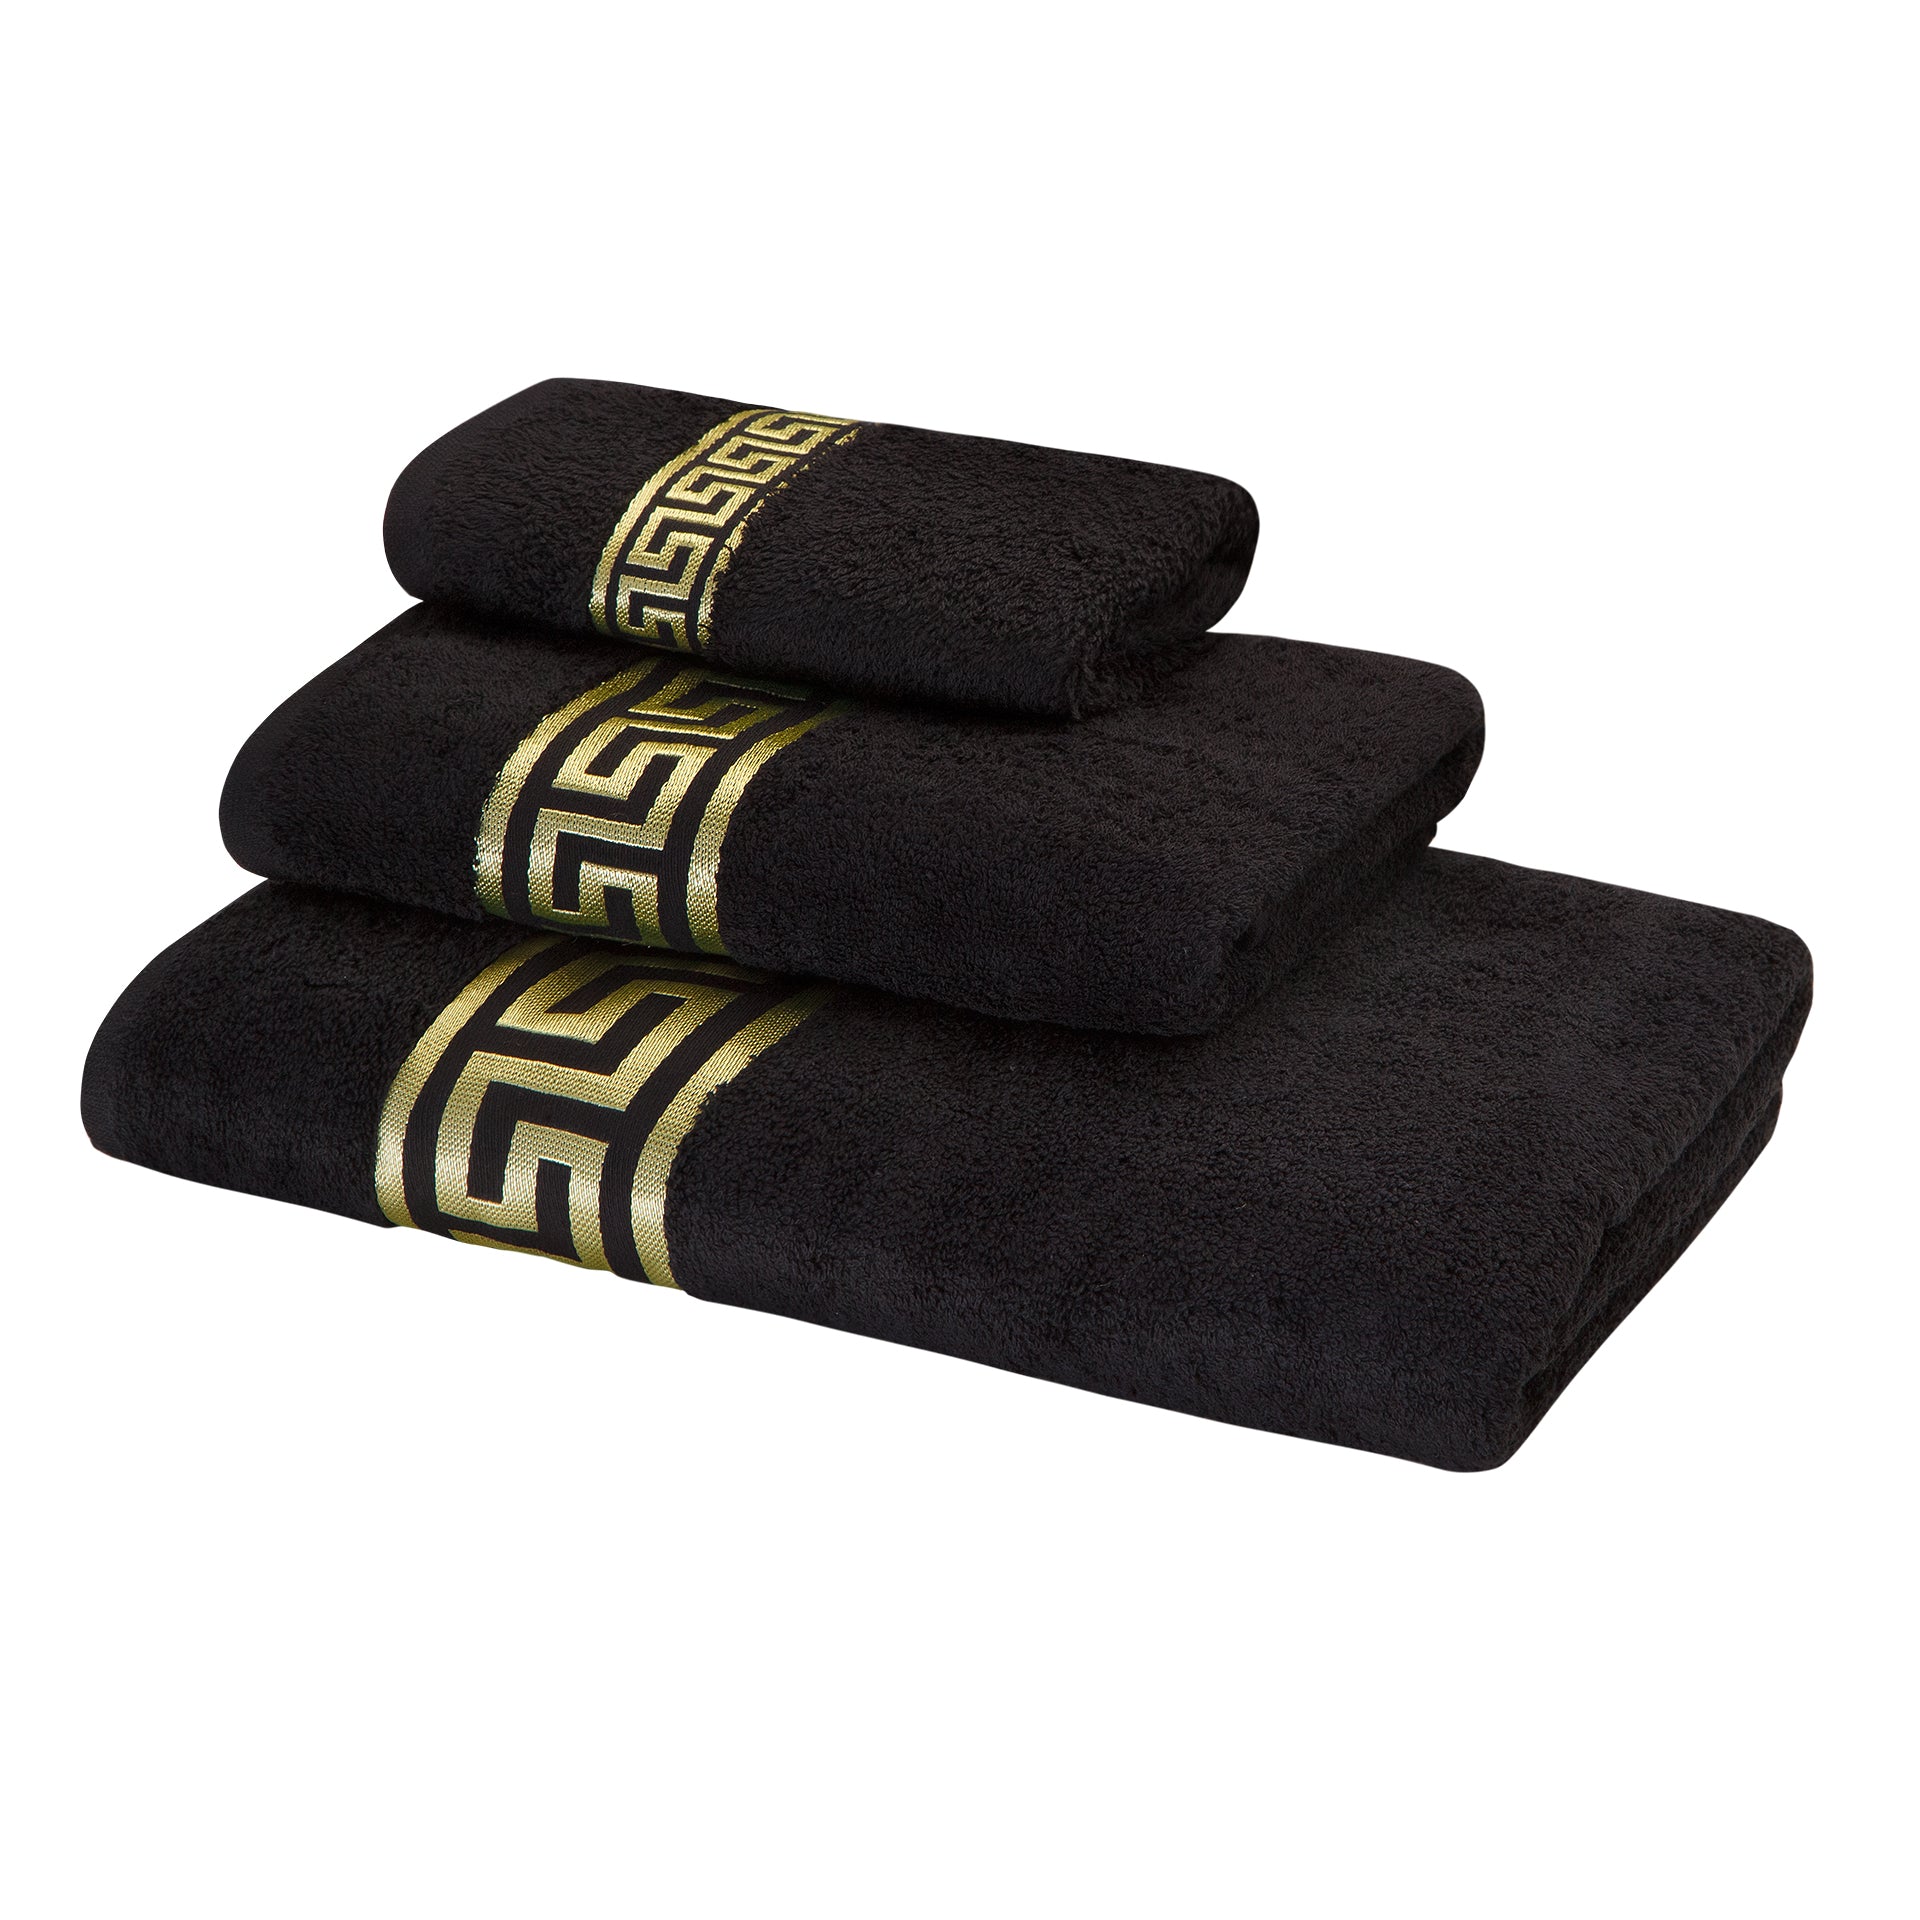 Meander Lion Towels Black Gold